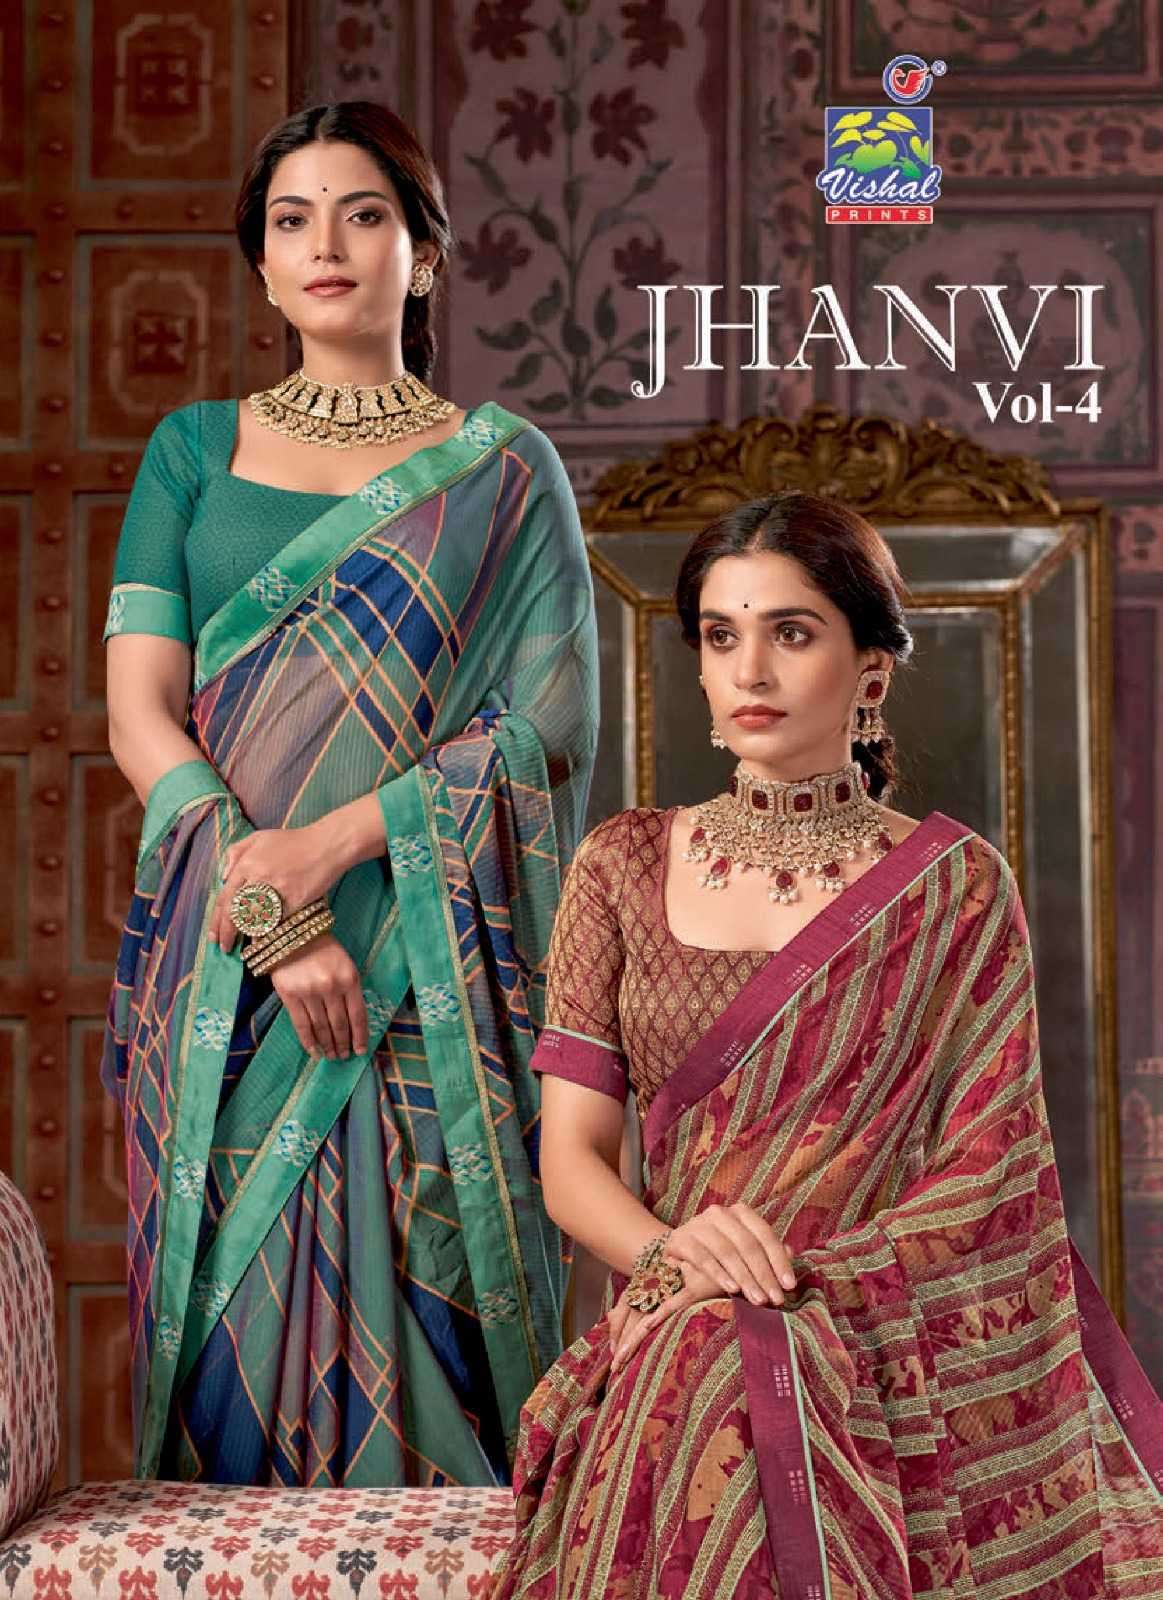 vishal print presents jhanvi vol 4 adorable fancy sarees catalog wholesaler and exporter in surat 2023 10 17 17 03 48